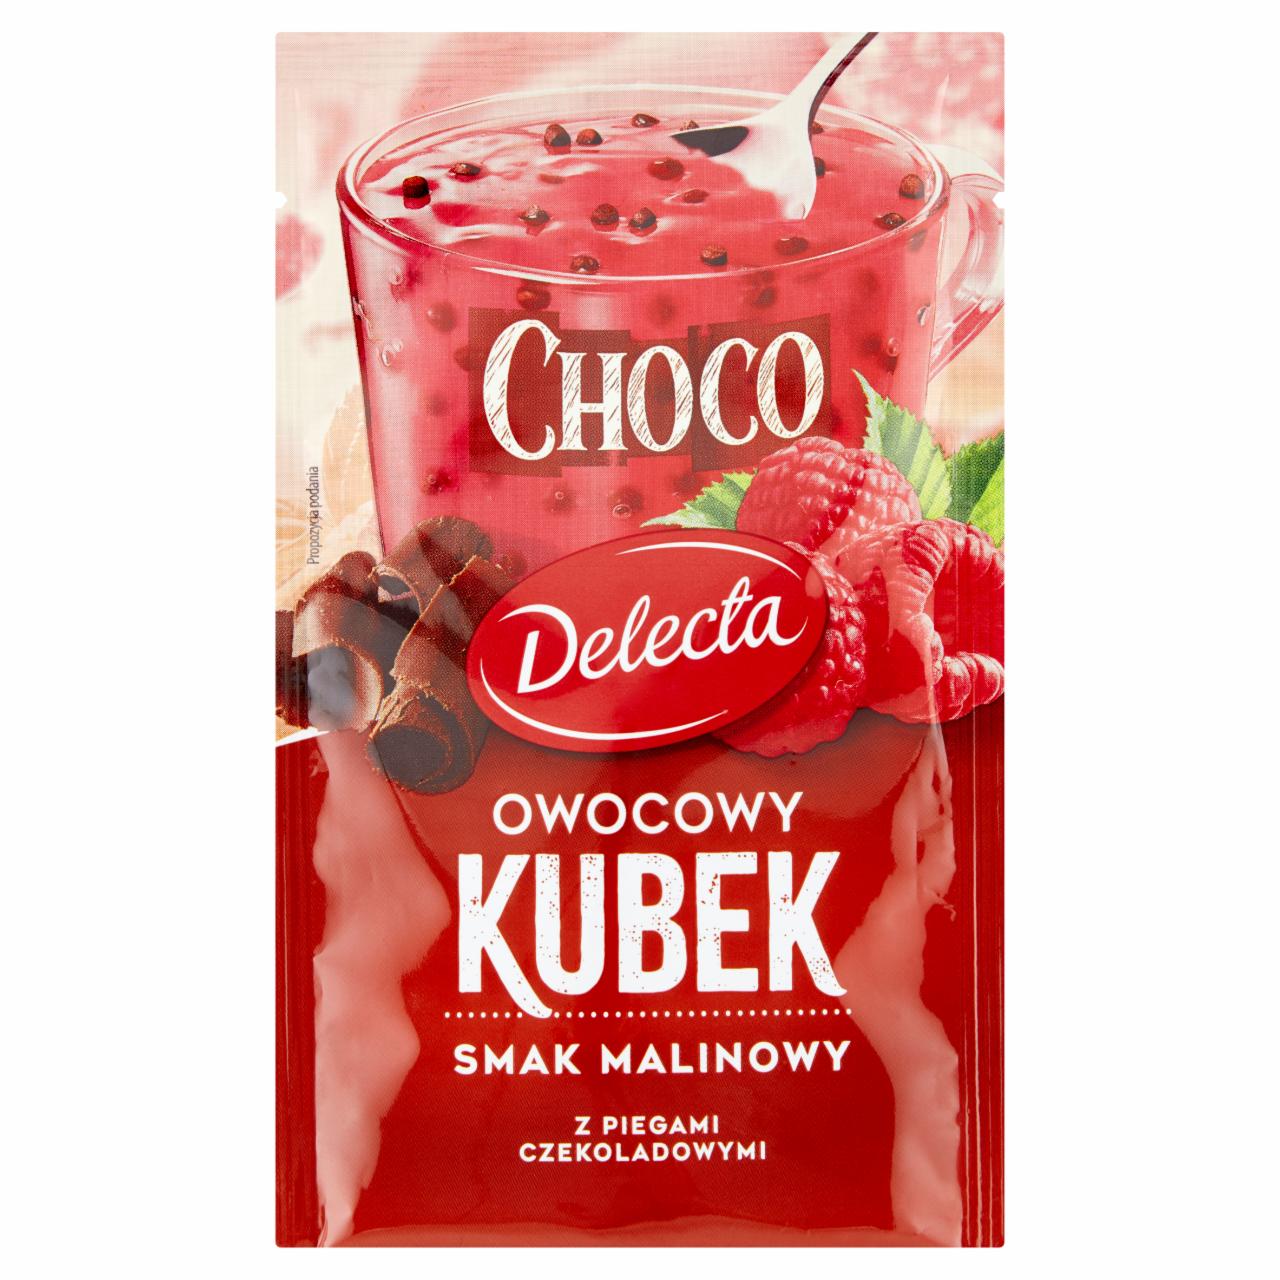 Zdjęcia - Delecta Choco Owocowy kubek Kisiel smak malinowy 32 g